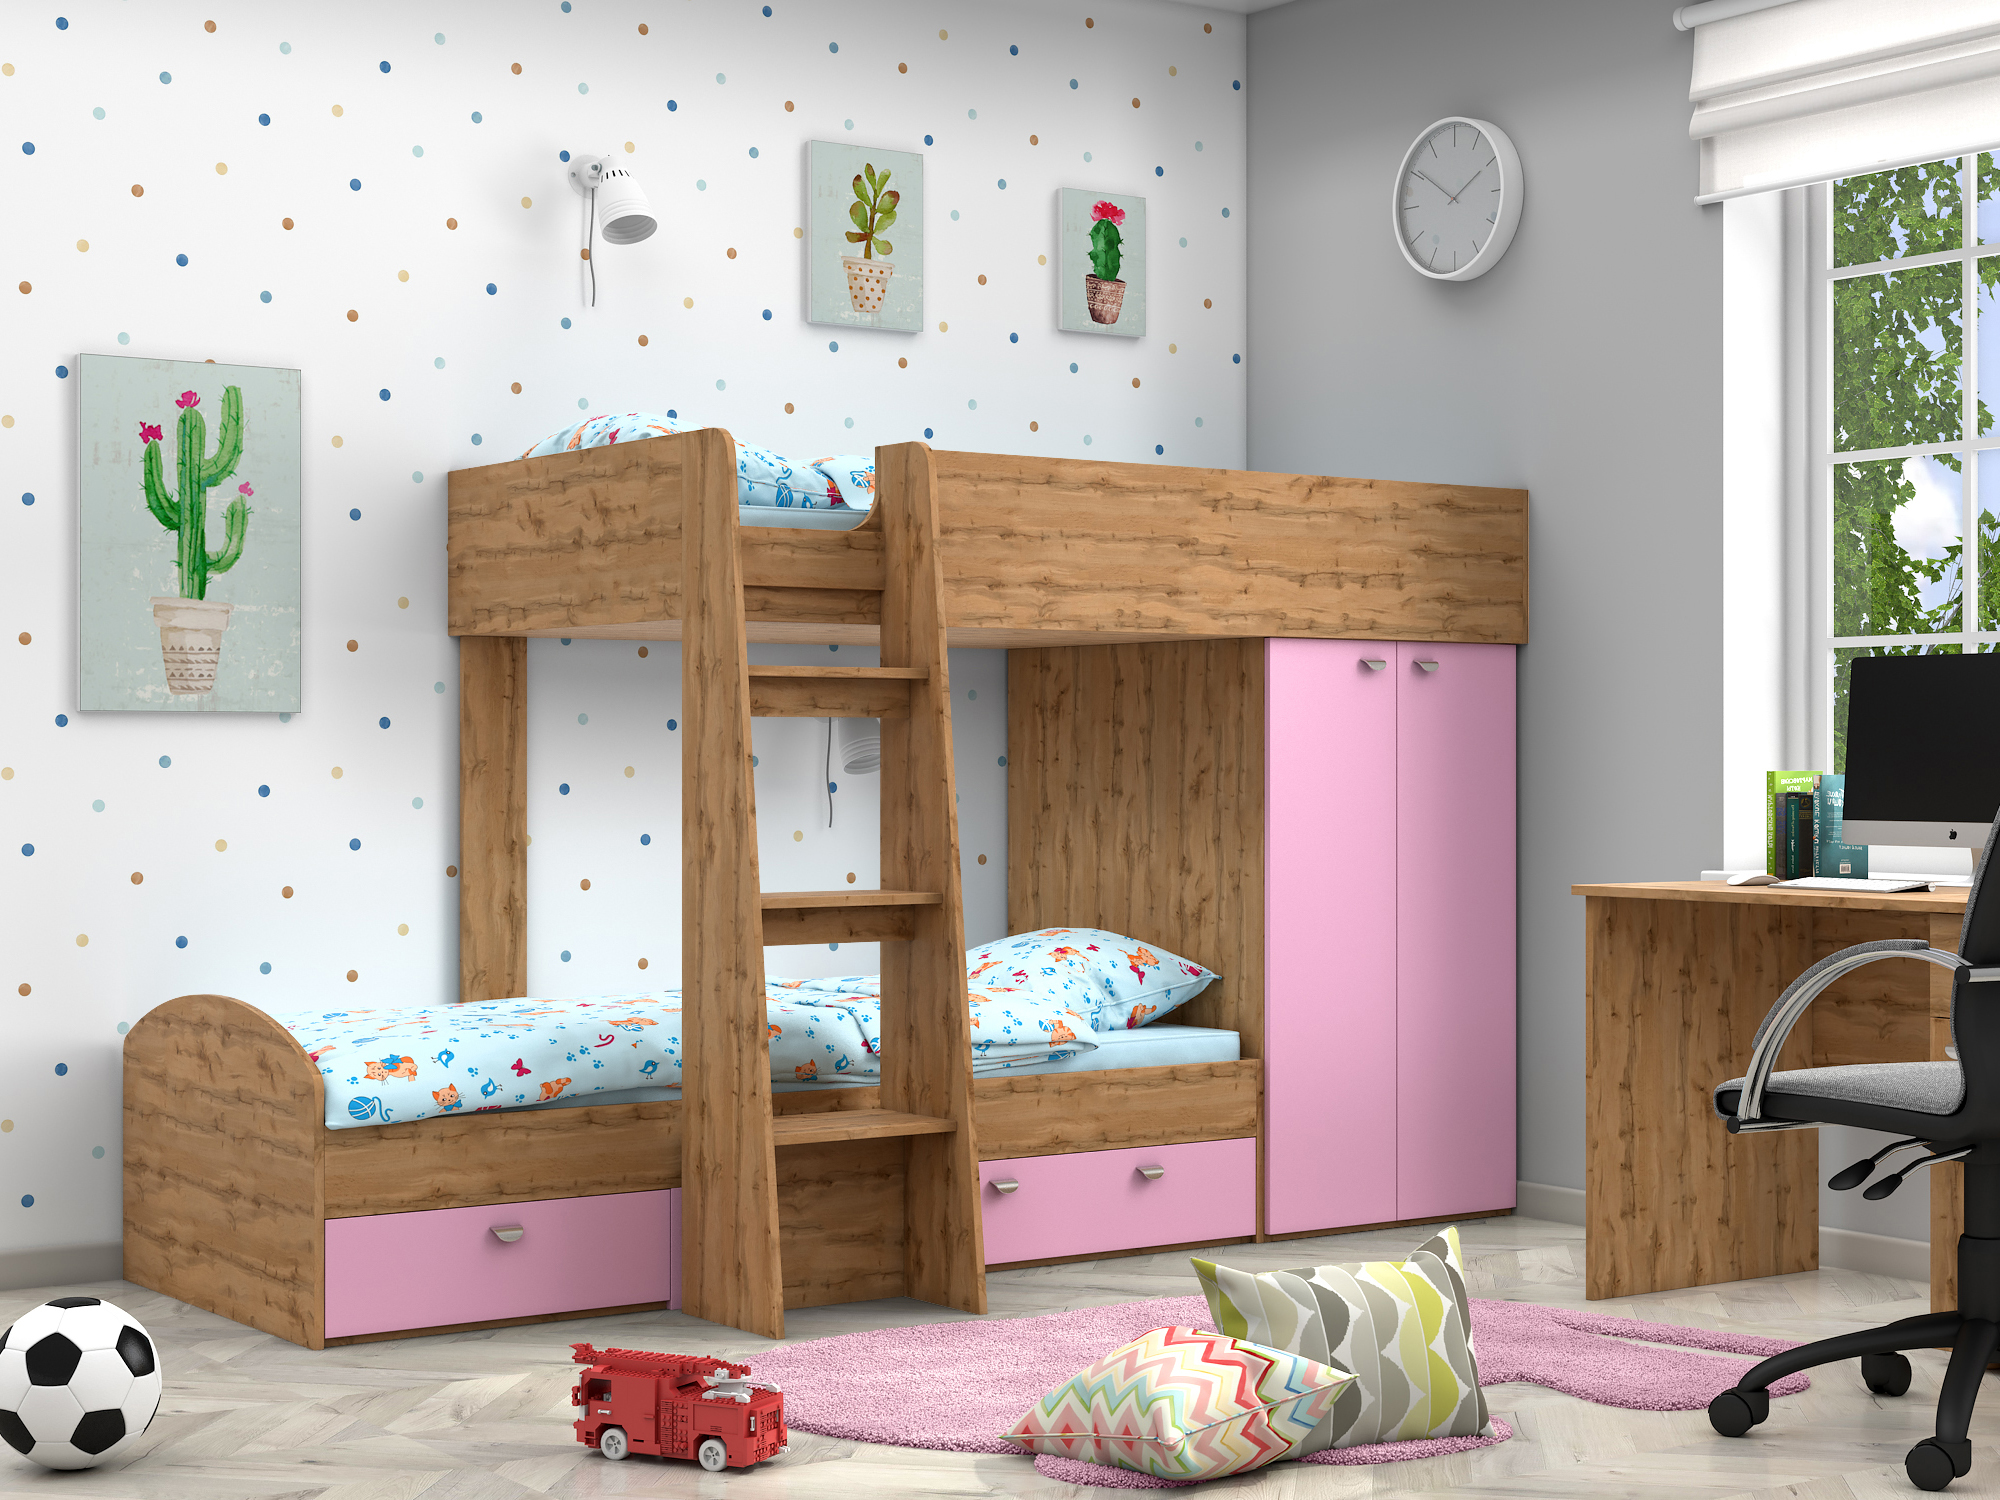 Двухъярусная кровать Golden Kids-2 (90х200) Розовый, Бежевый, ЛДСП двухъярусная кровать golden kids 2 90х200 венге коричневый темный лдсп